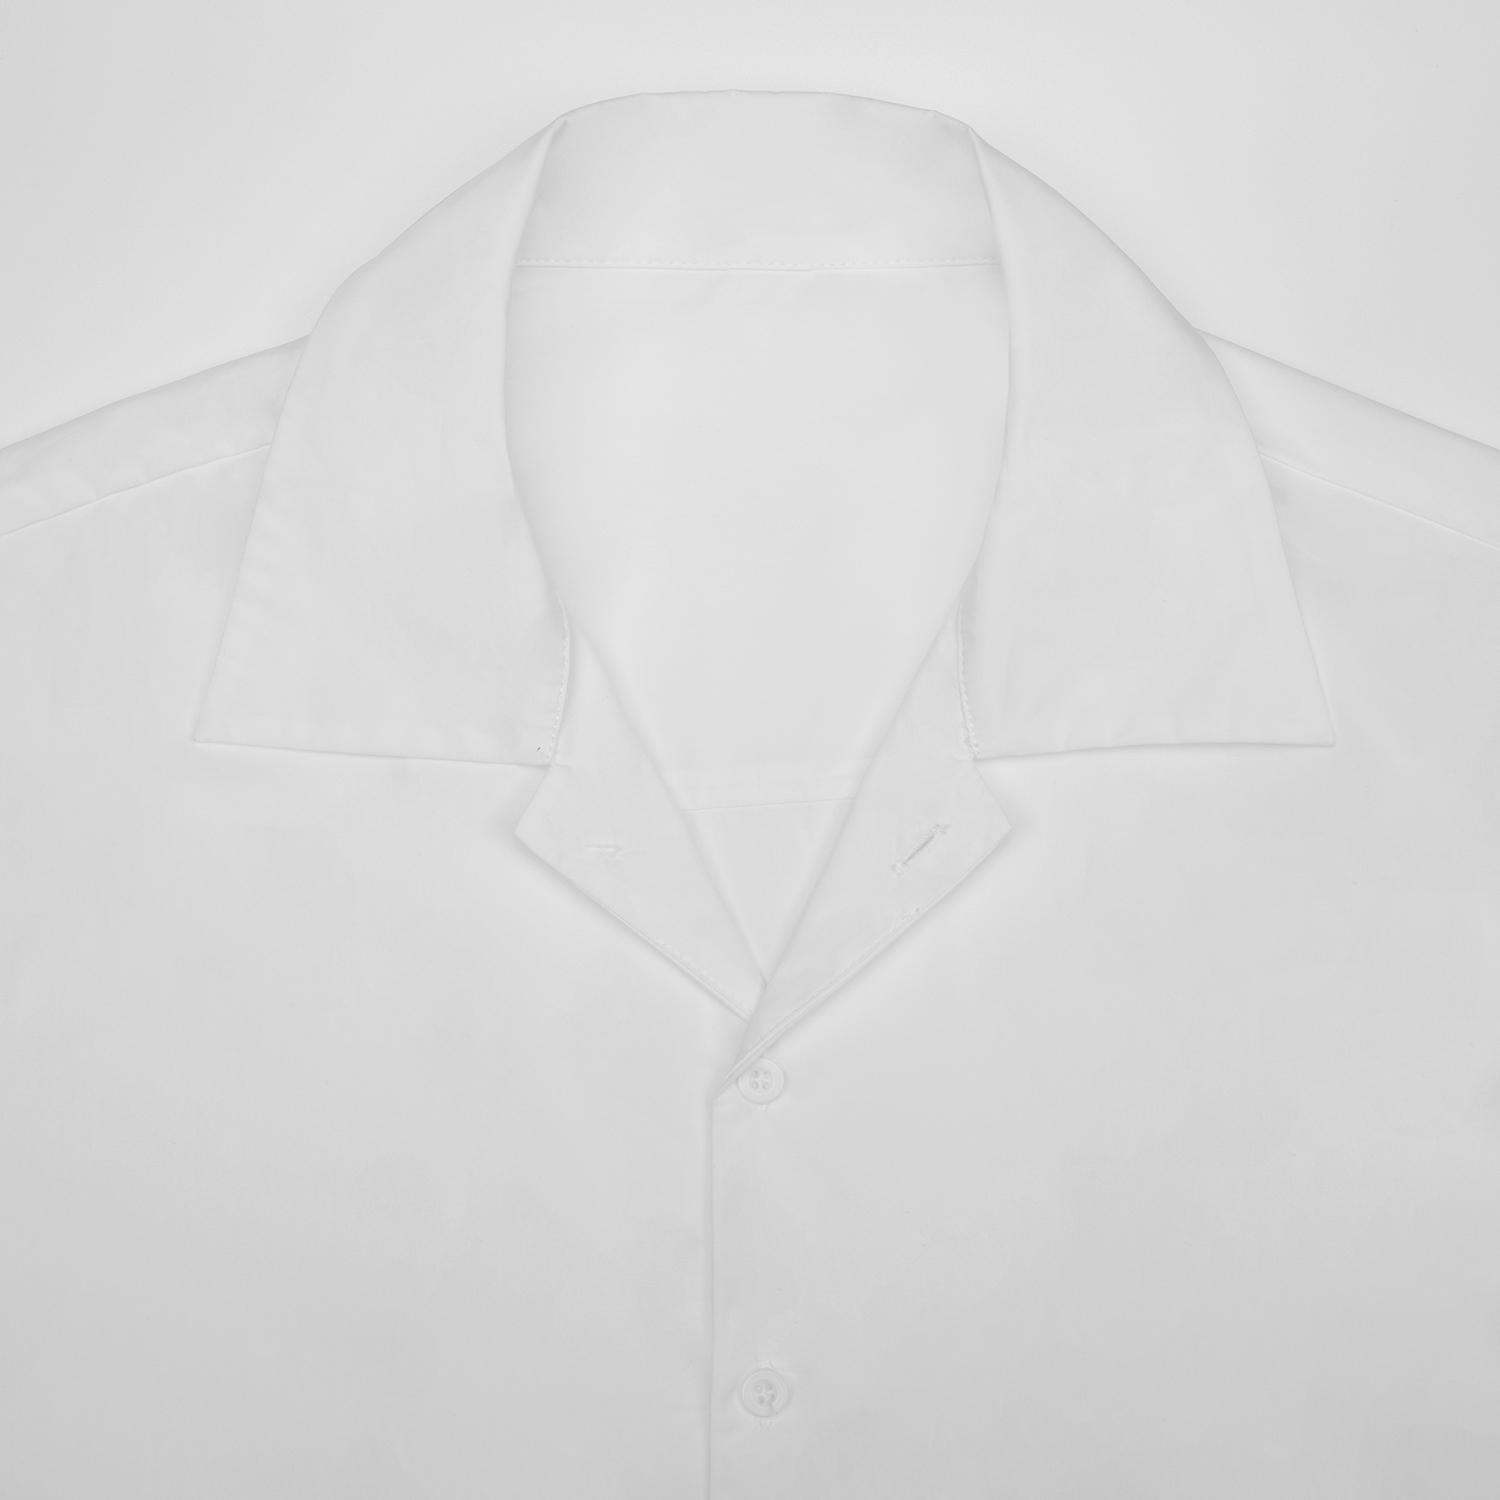 All-Over Print Men's Classic Long Sleeve Shirt | HugePOD-4